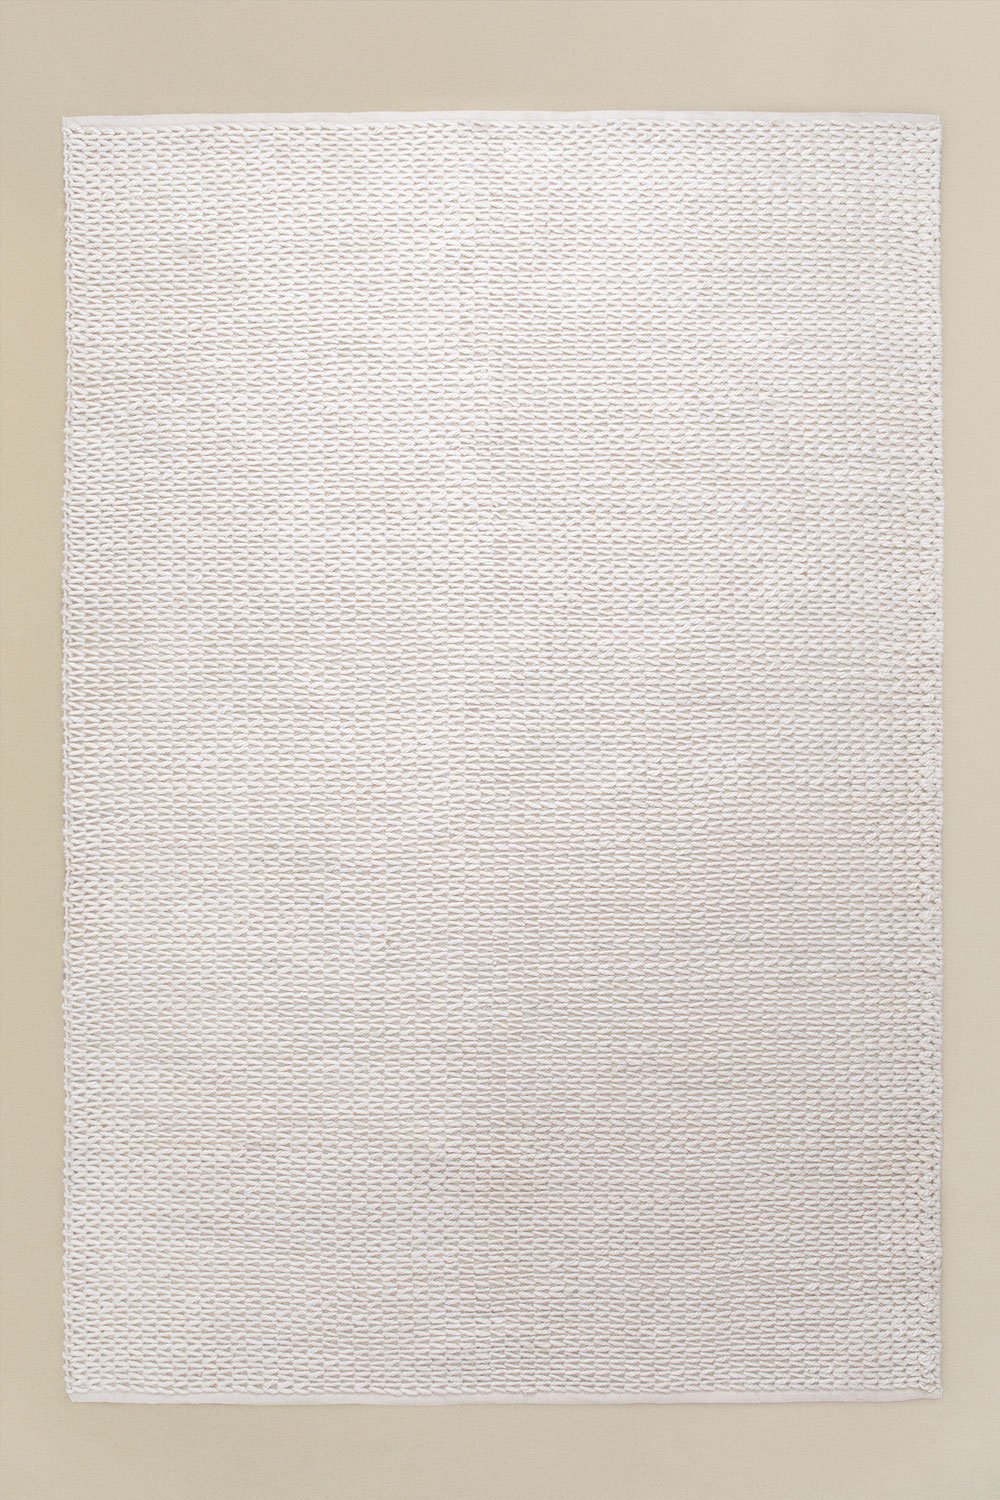 Vloerkleed (230x160 cm) Nicolalla, galerij beeld 1